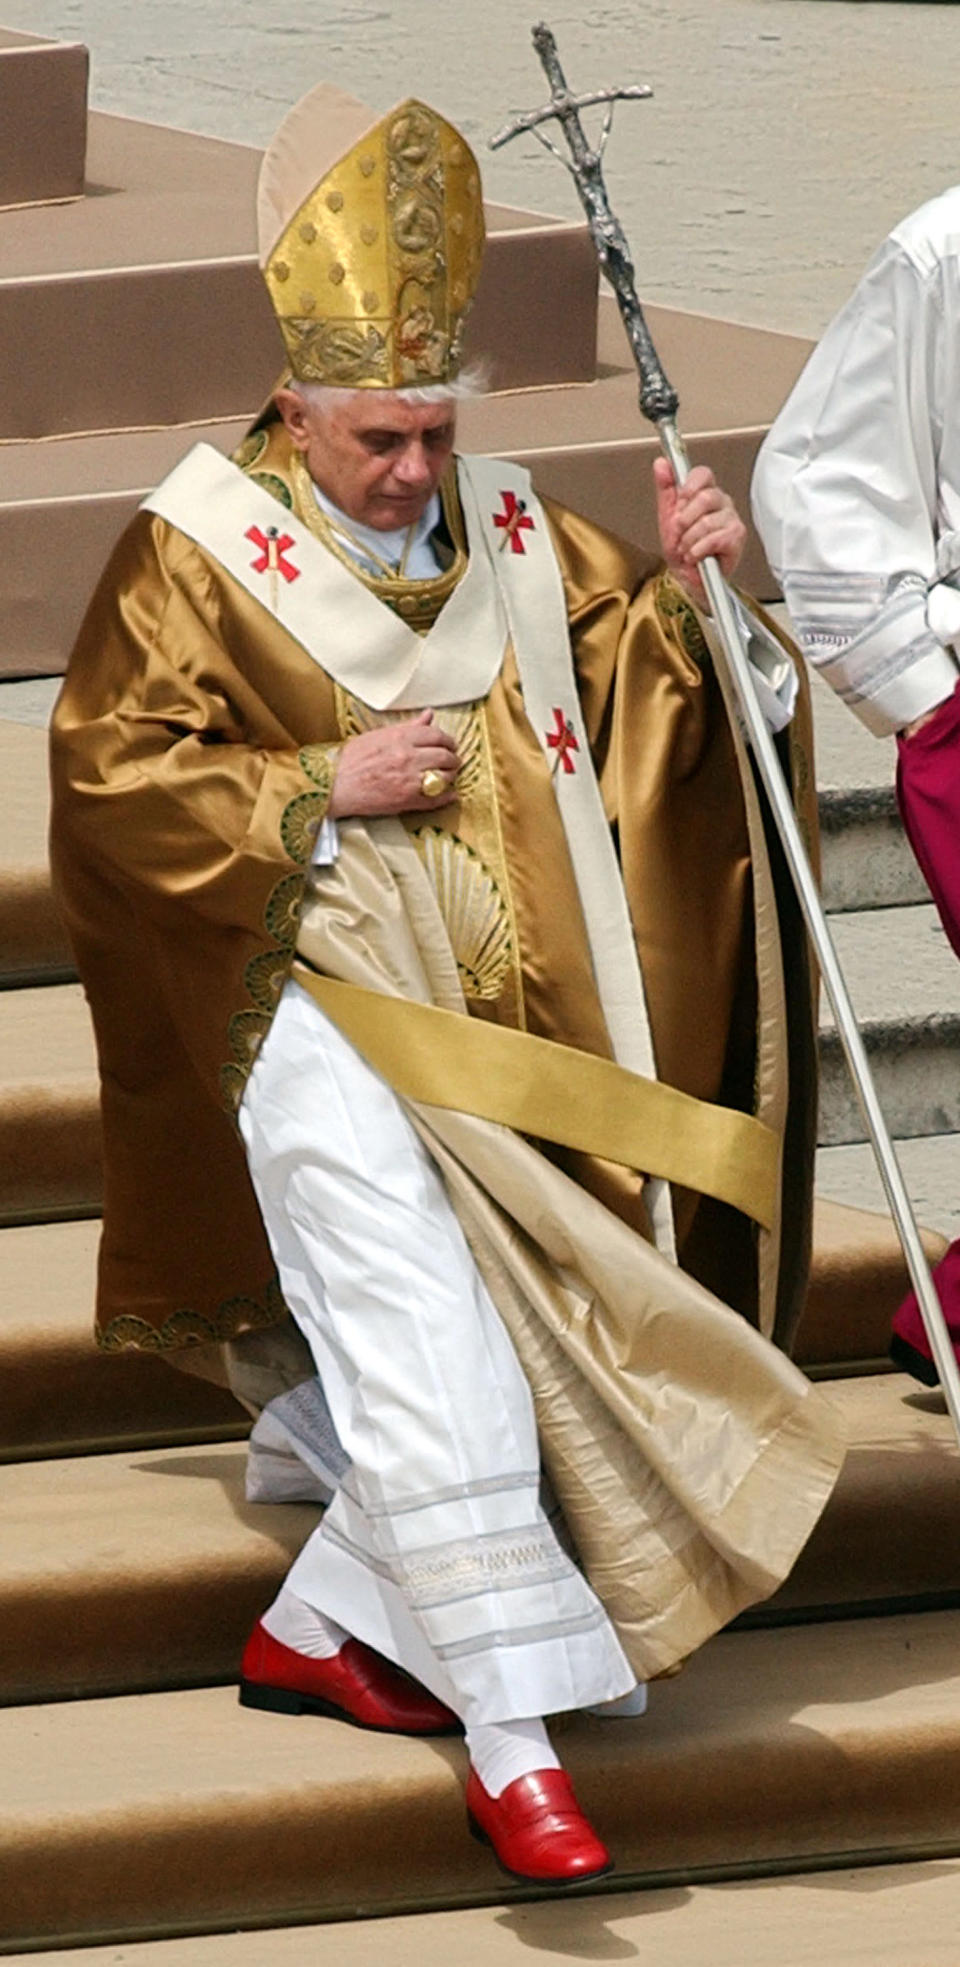 El Papa Benedicto XVI con todo el atuendo dorado y rojo, el cual hasta el momento, ha relegado por el Papa Francisco. AP Photo/Jasper Juinen